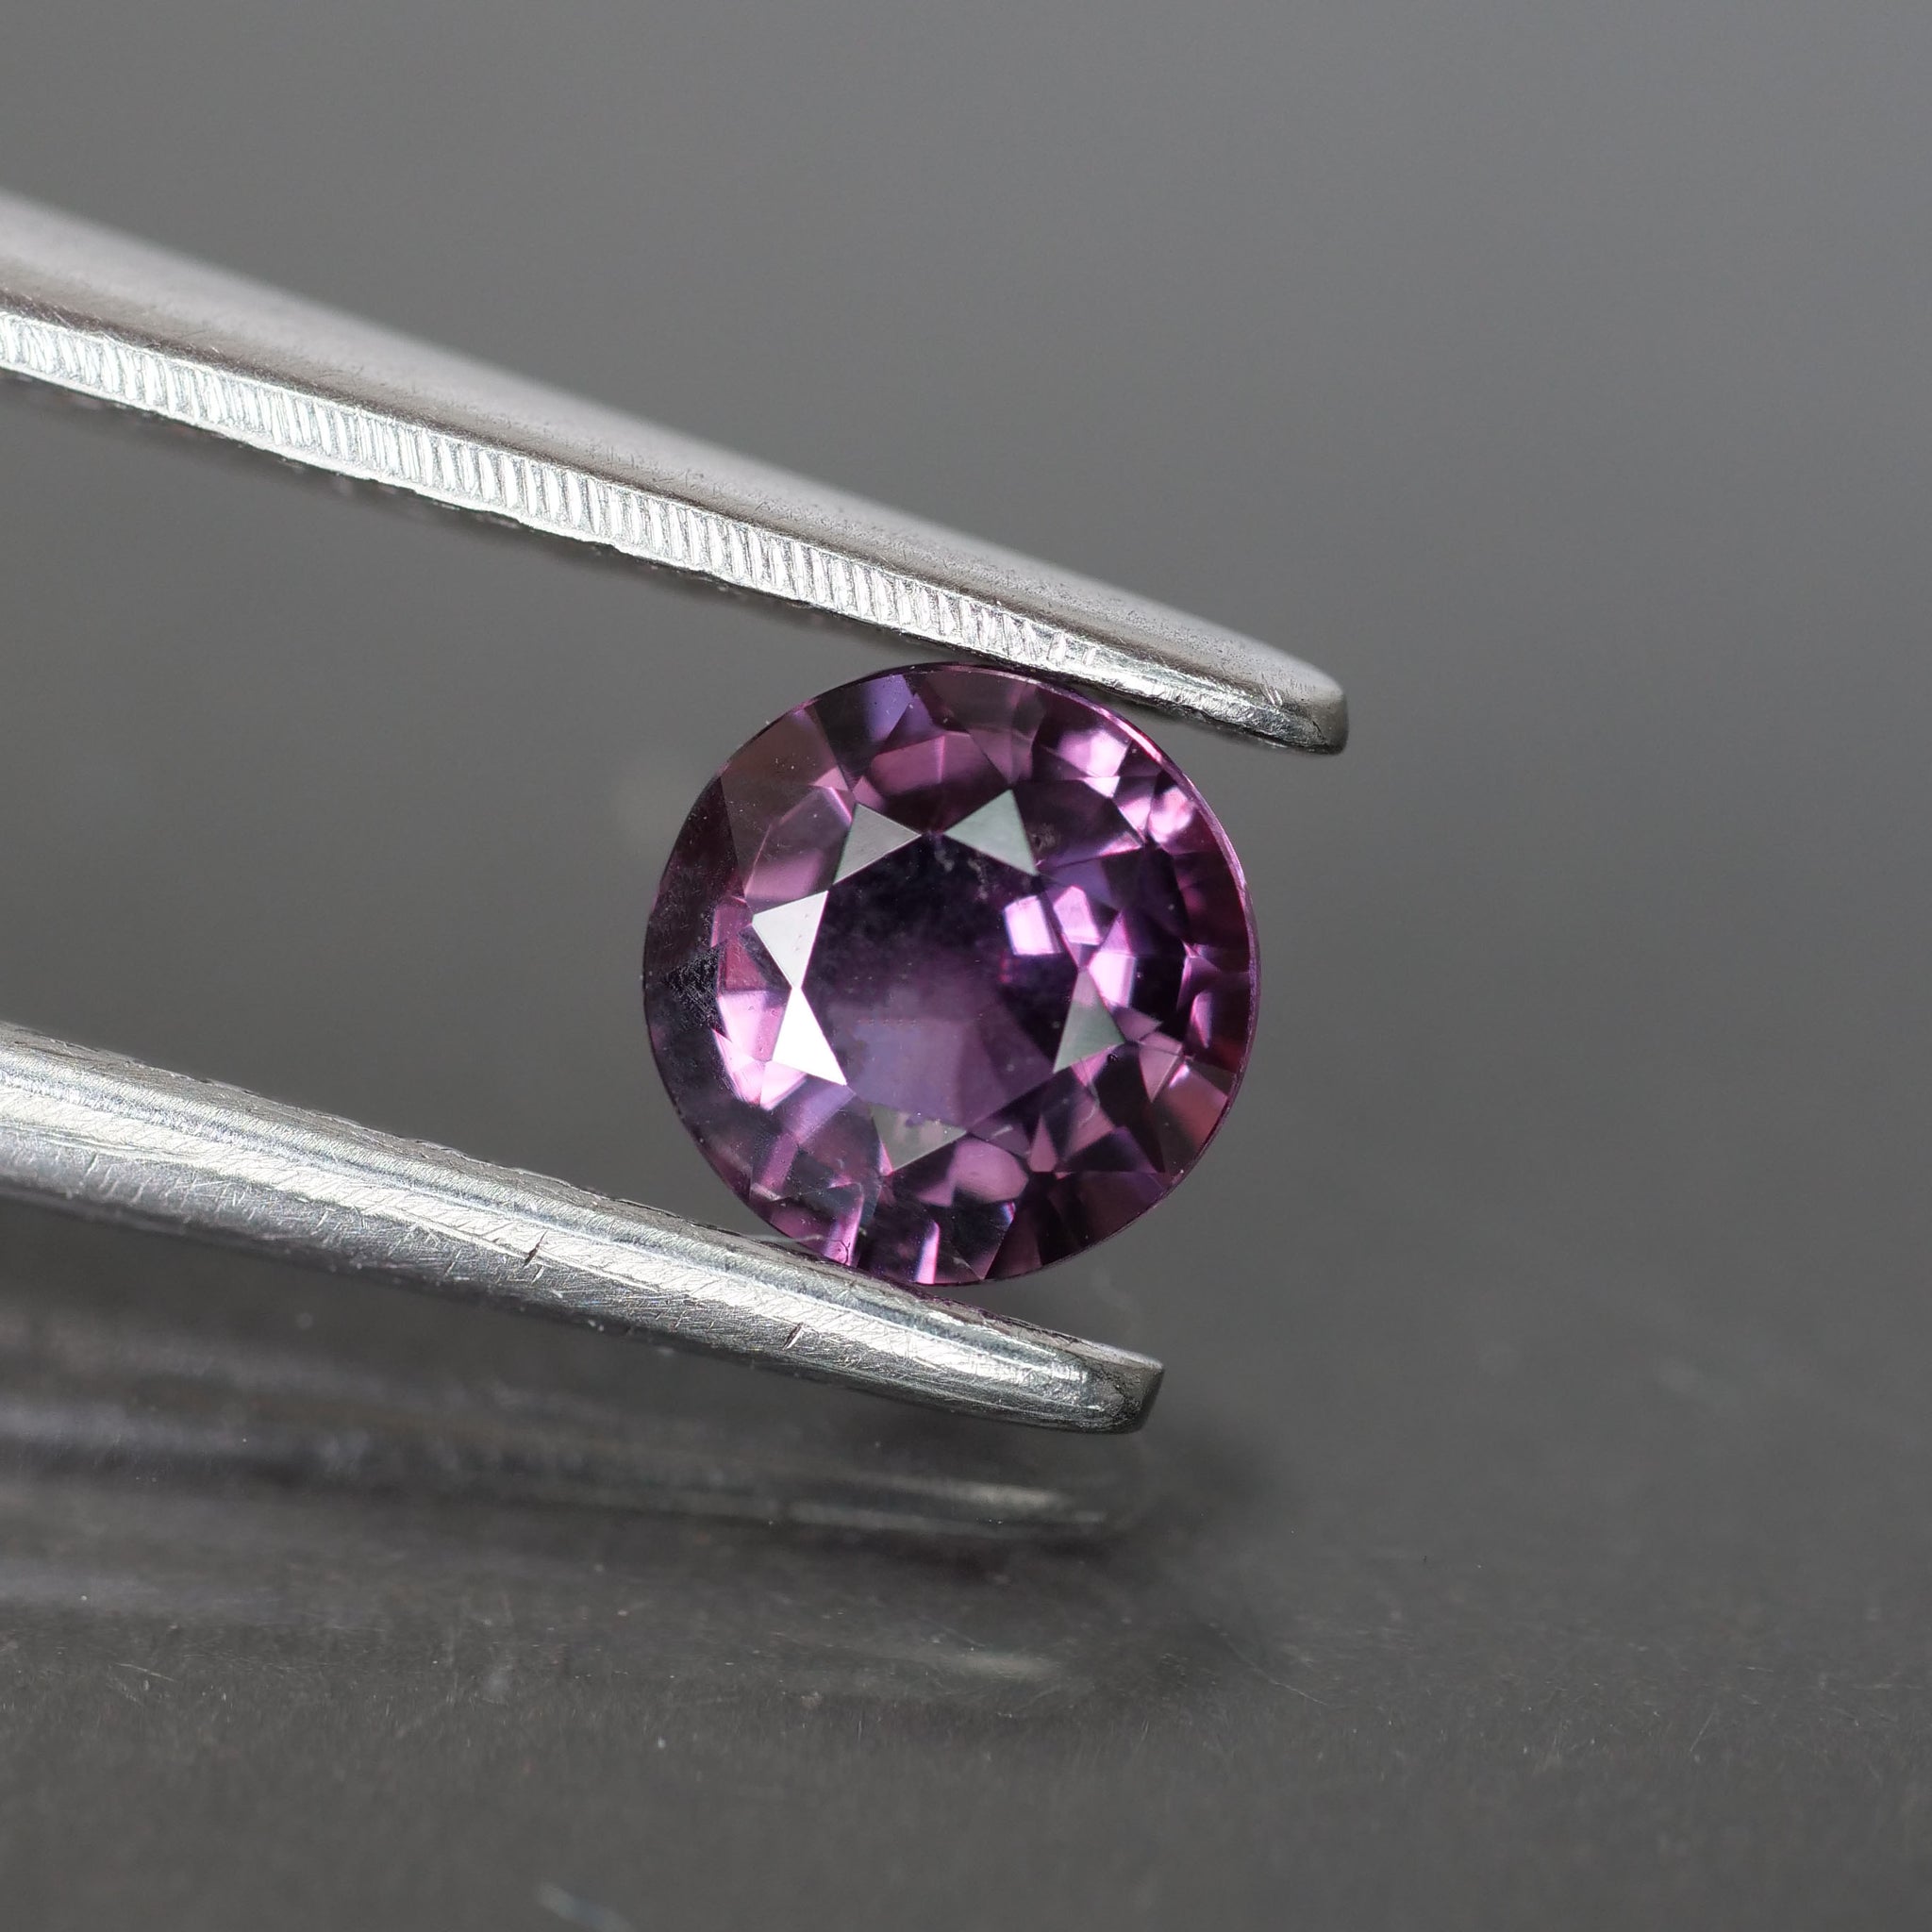 Sapphire | natural, purple, round cut 4.5 mm, 0.46 ct - Eden Garden Jewelry™